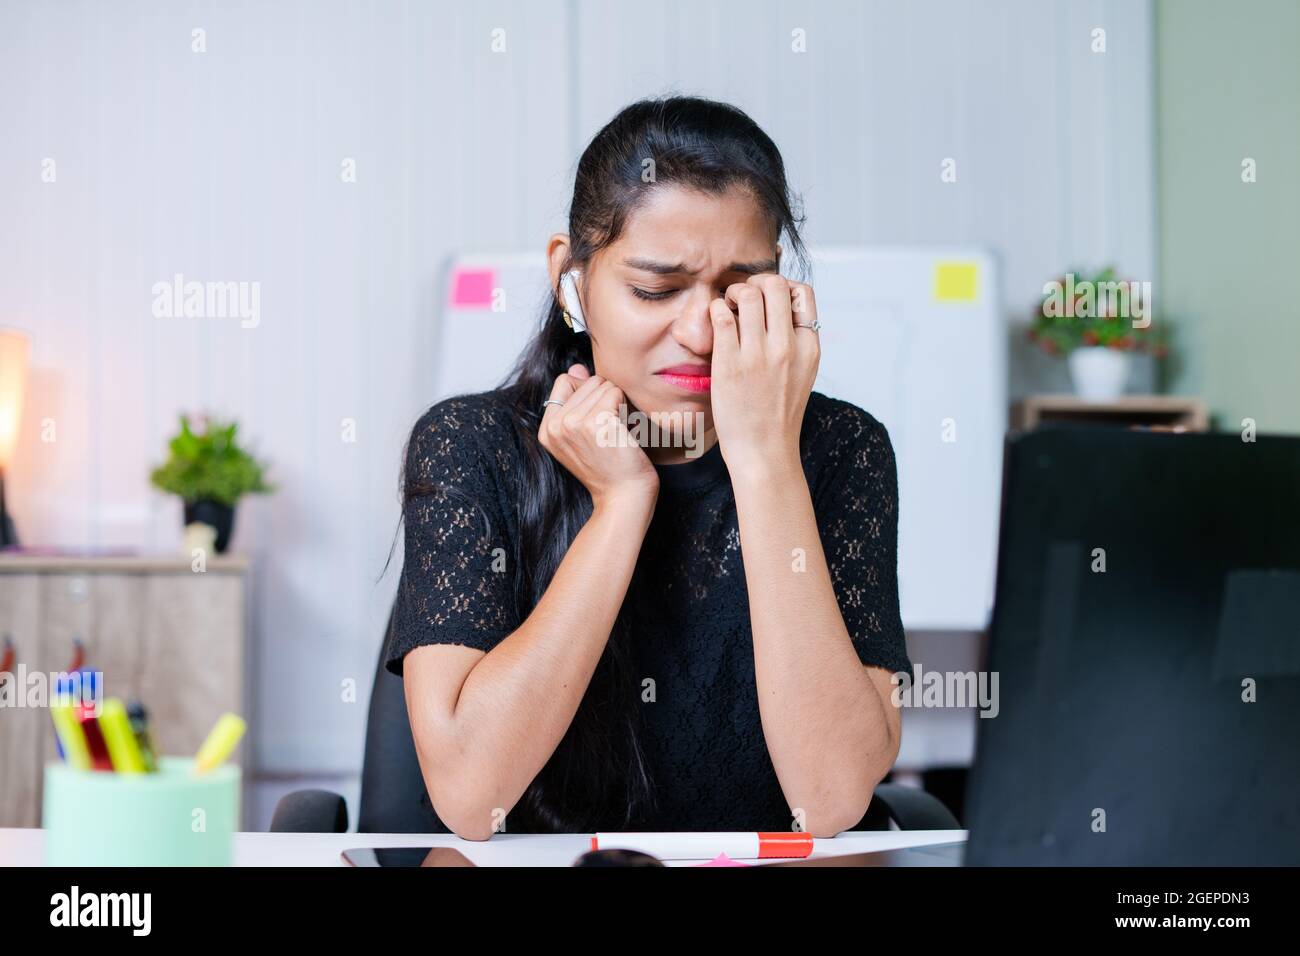 prise de vue moyenne d'une jeune femme indienne frustrée et triste qui pleure sur le lieu de travail - concept de stress émotionnel, mental ou professionnel au bureau. Banque D'Images